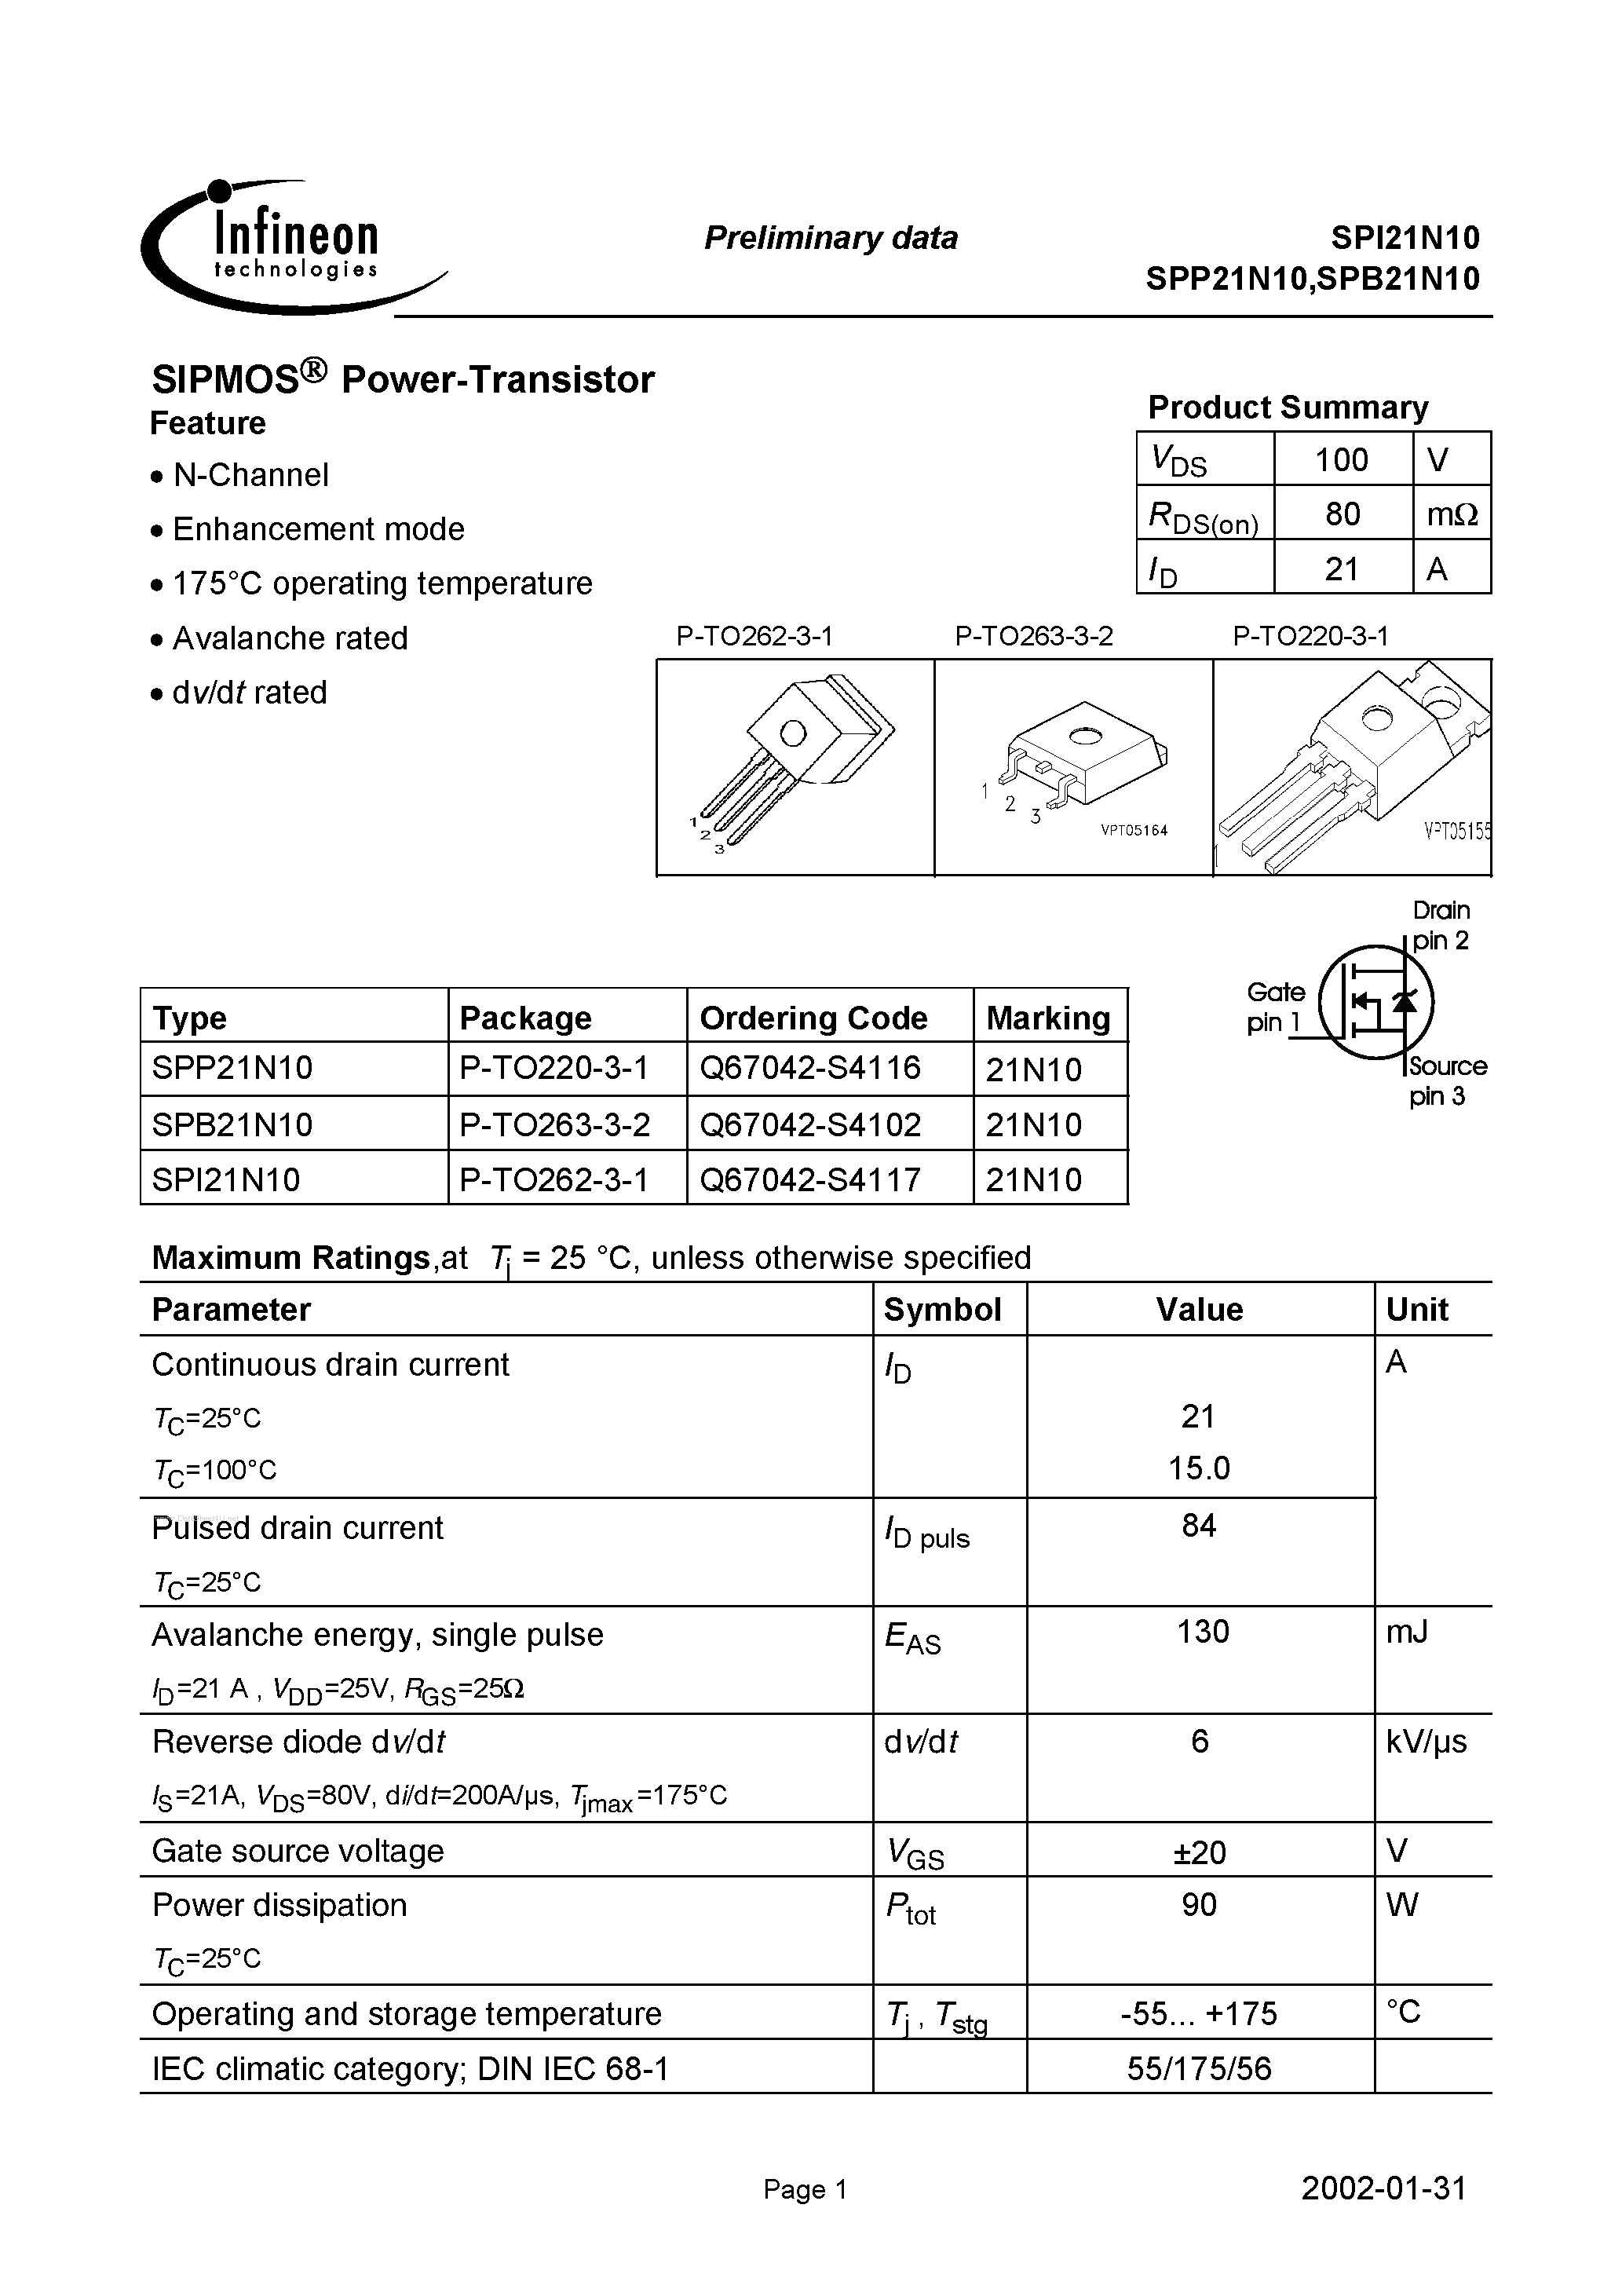 Datasheet SPI21N10 - SIPMOS Power-Transistor page 1